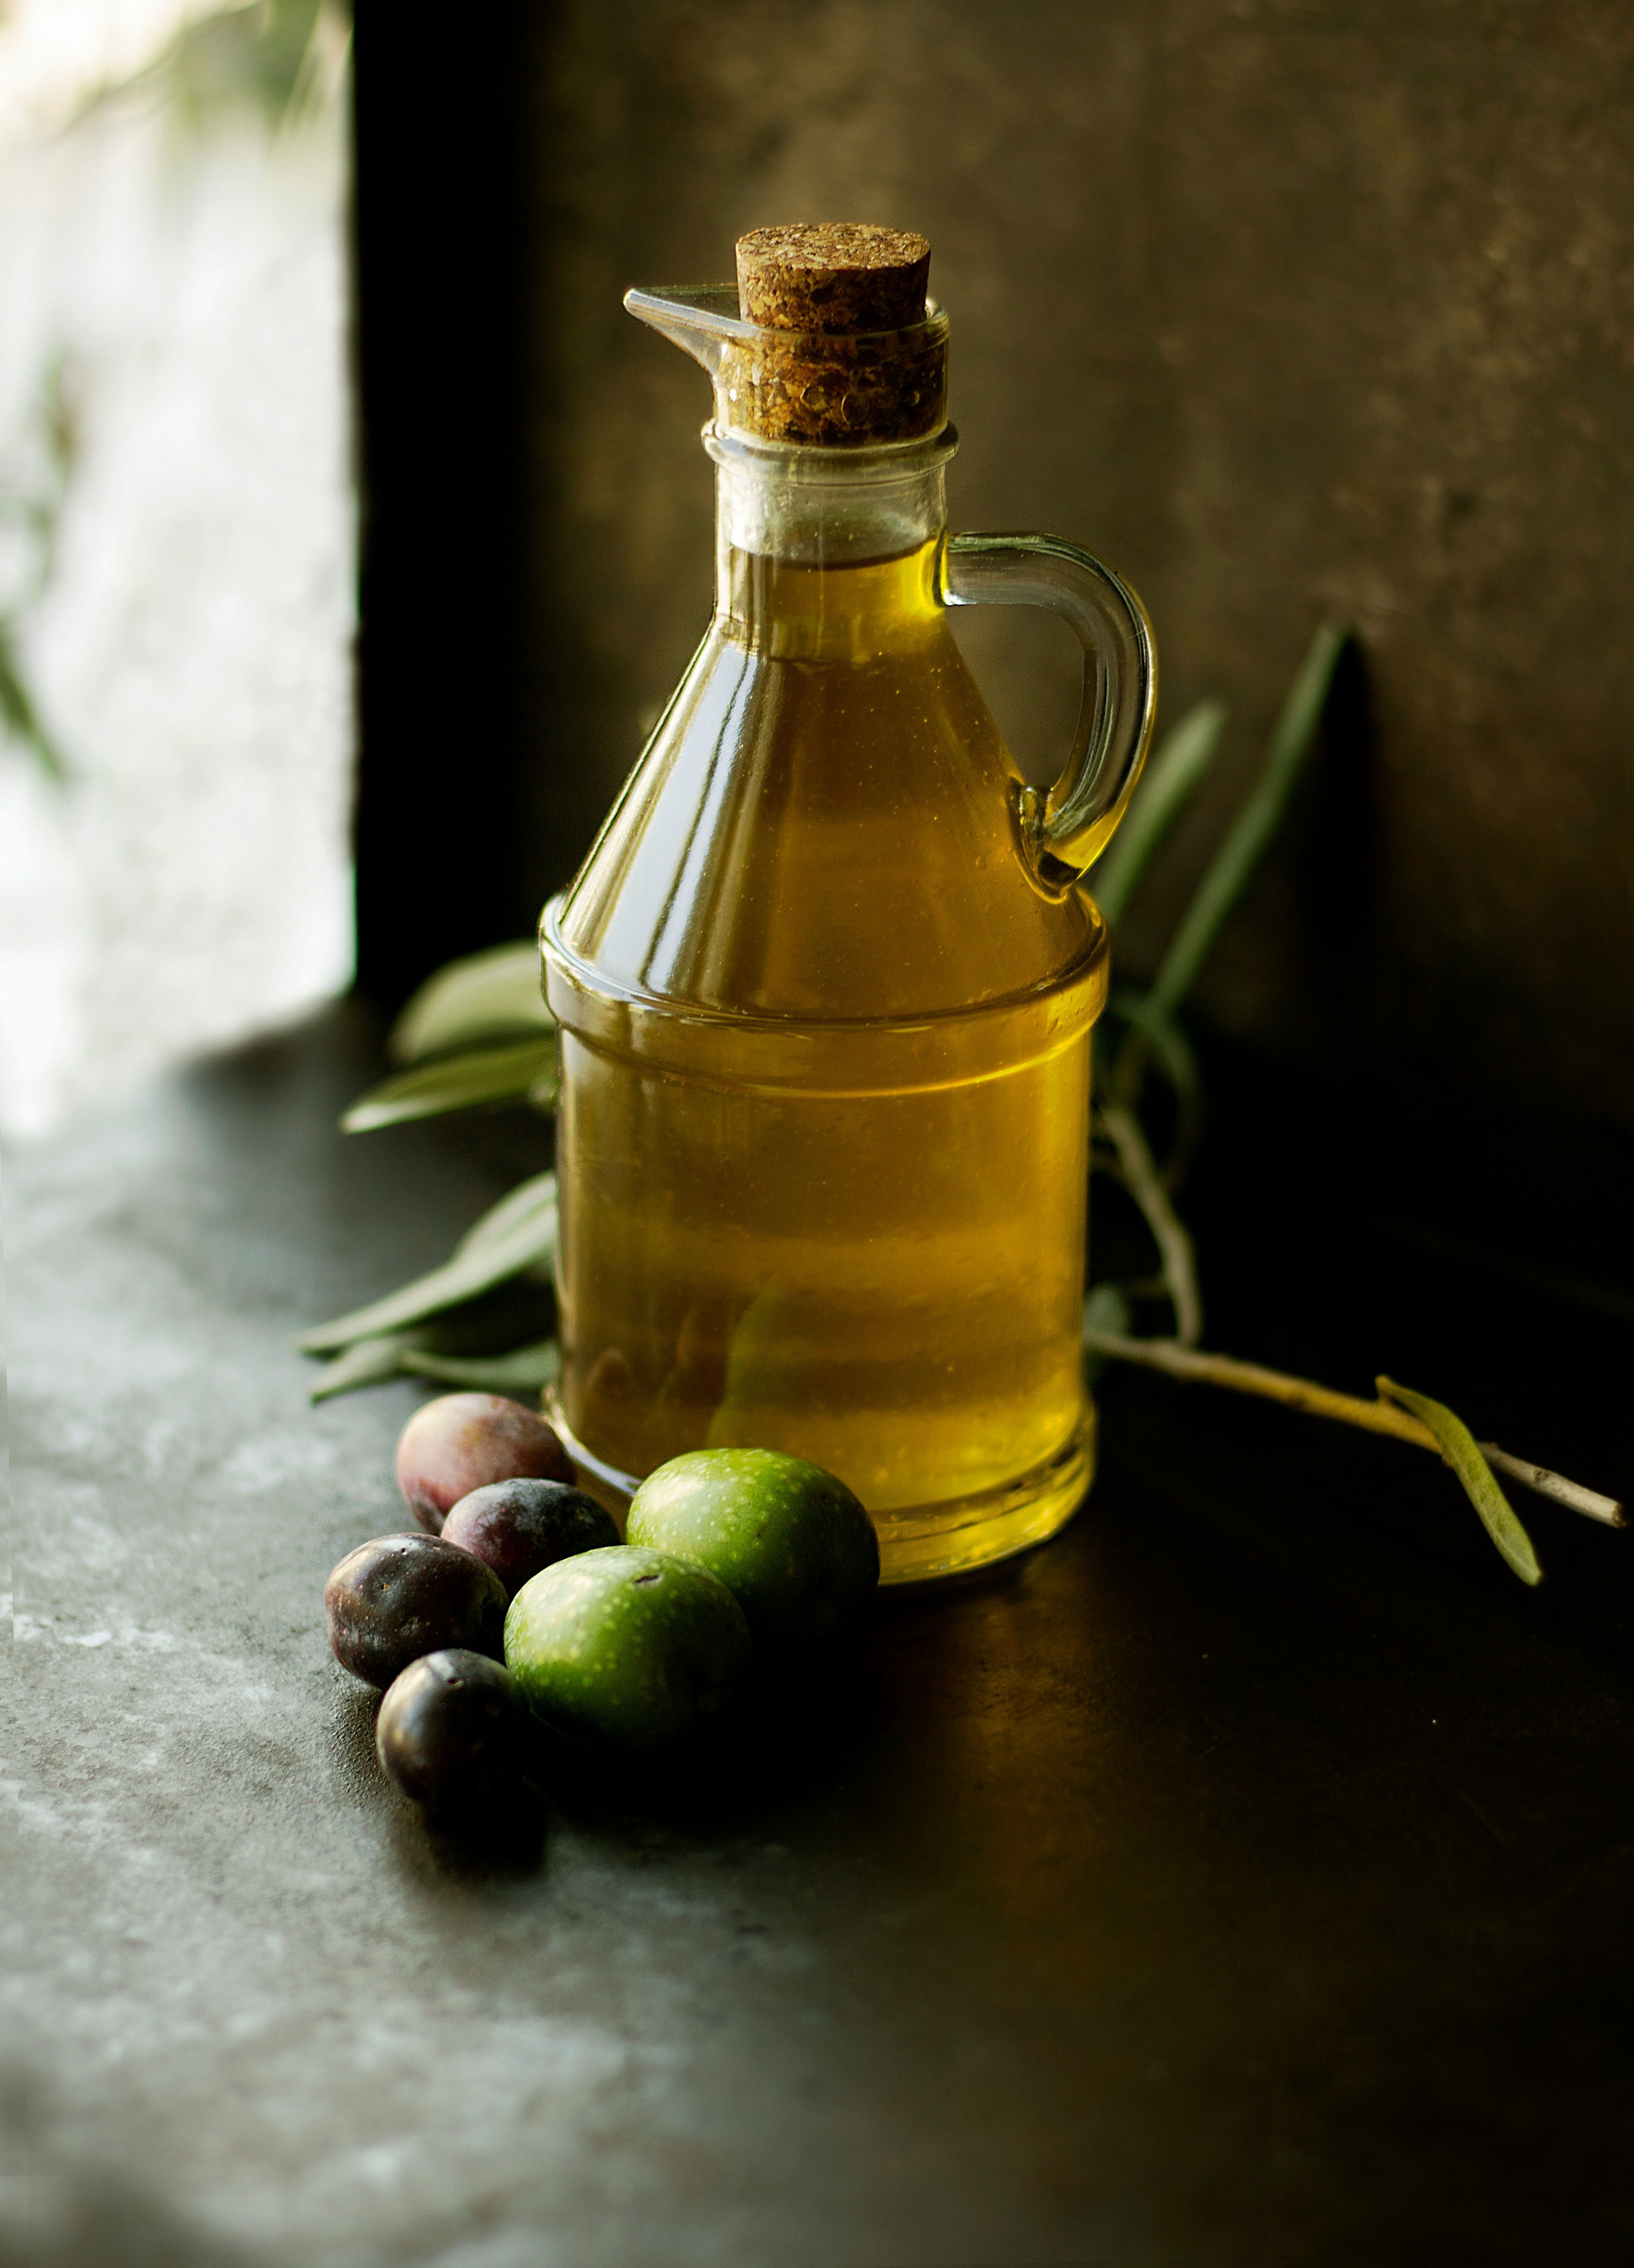 Precio del aceite de oliva alcanza máximos históricos. ¿Qué podemos esperar en un futuro próximo?